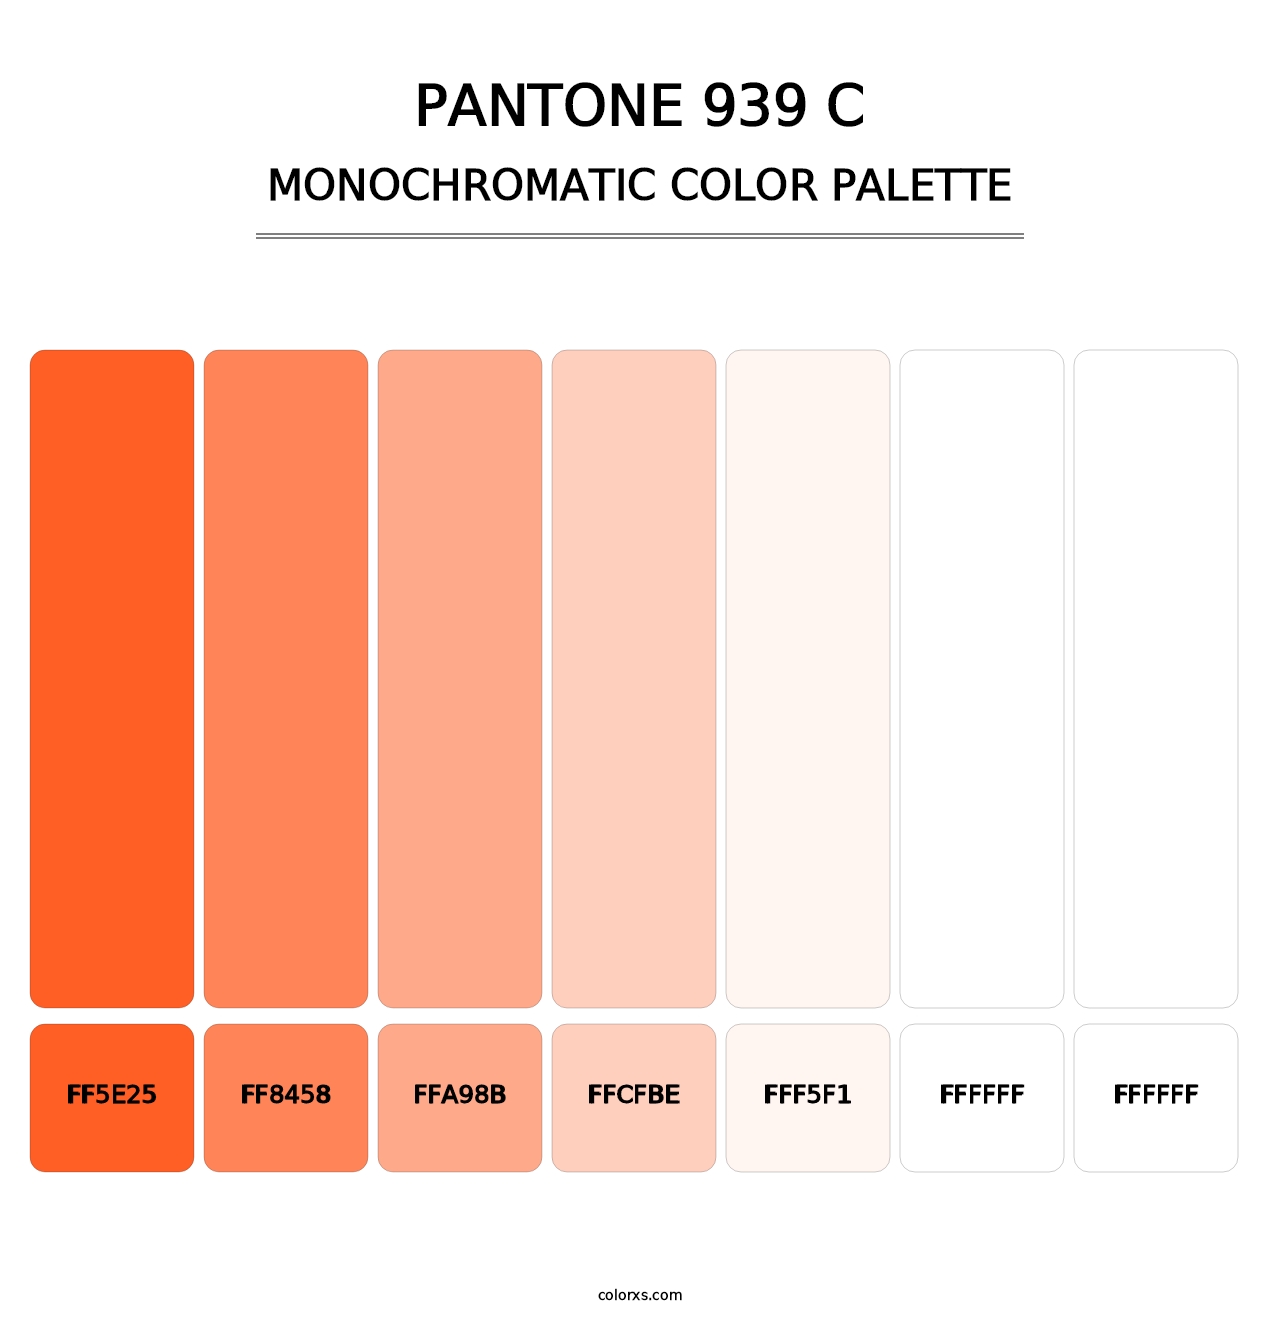 PANTONE 939 C - Monochromatic Color Palette